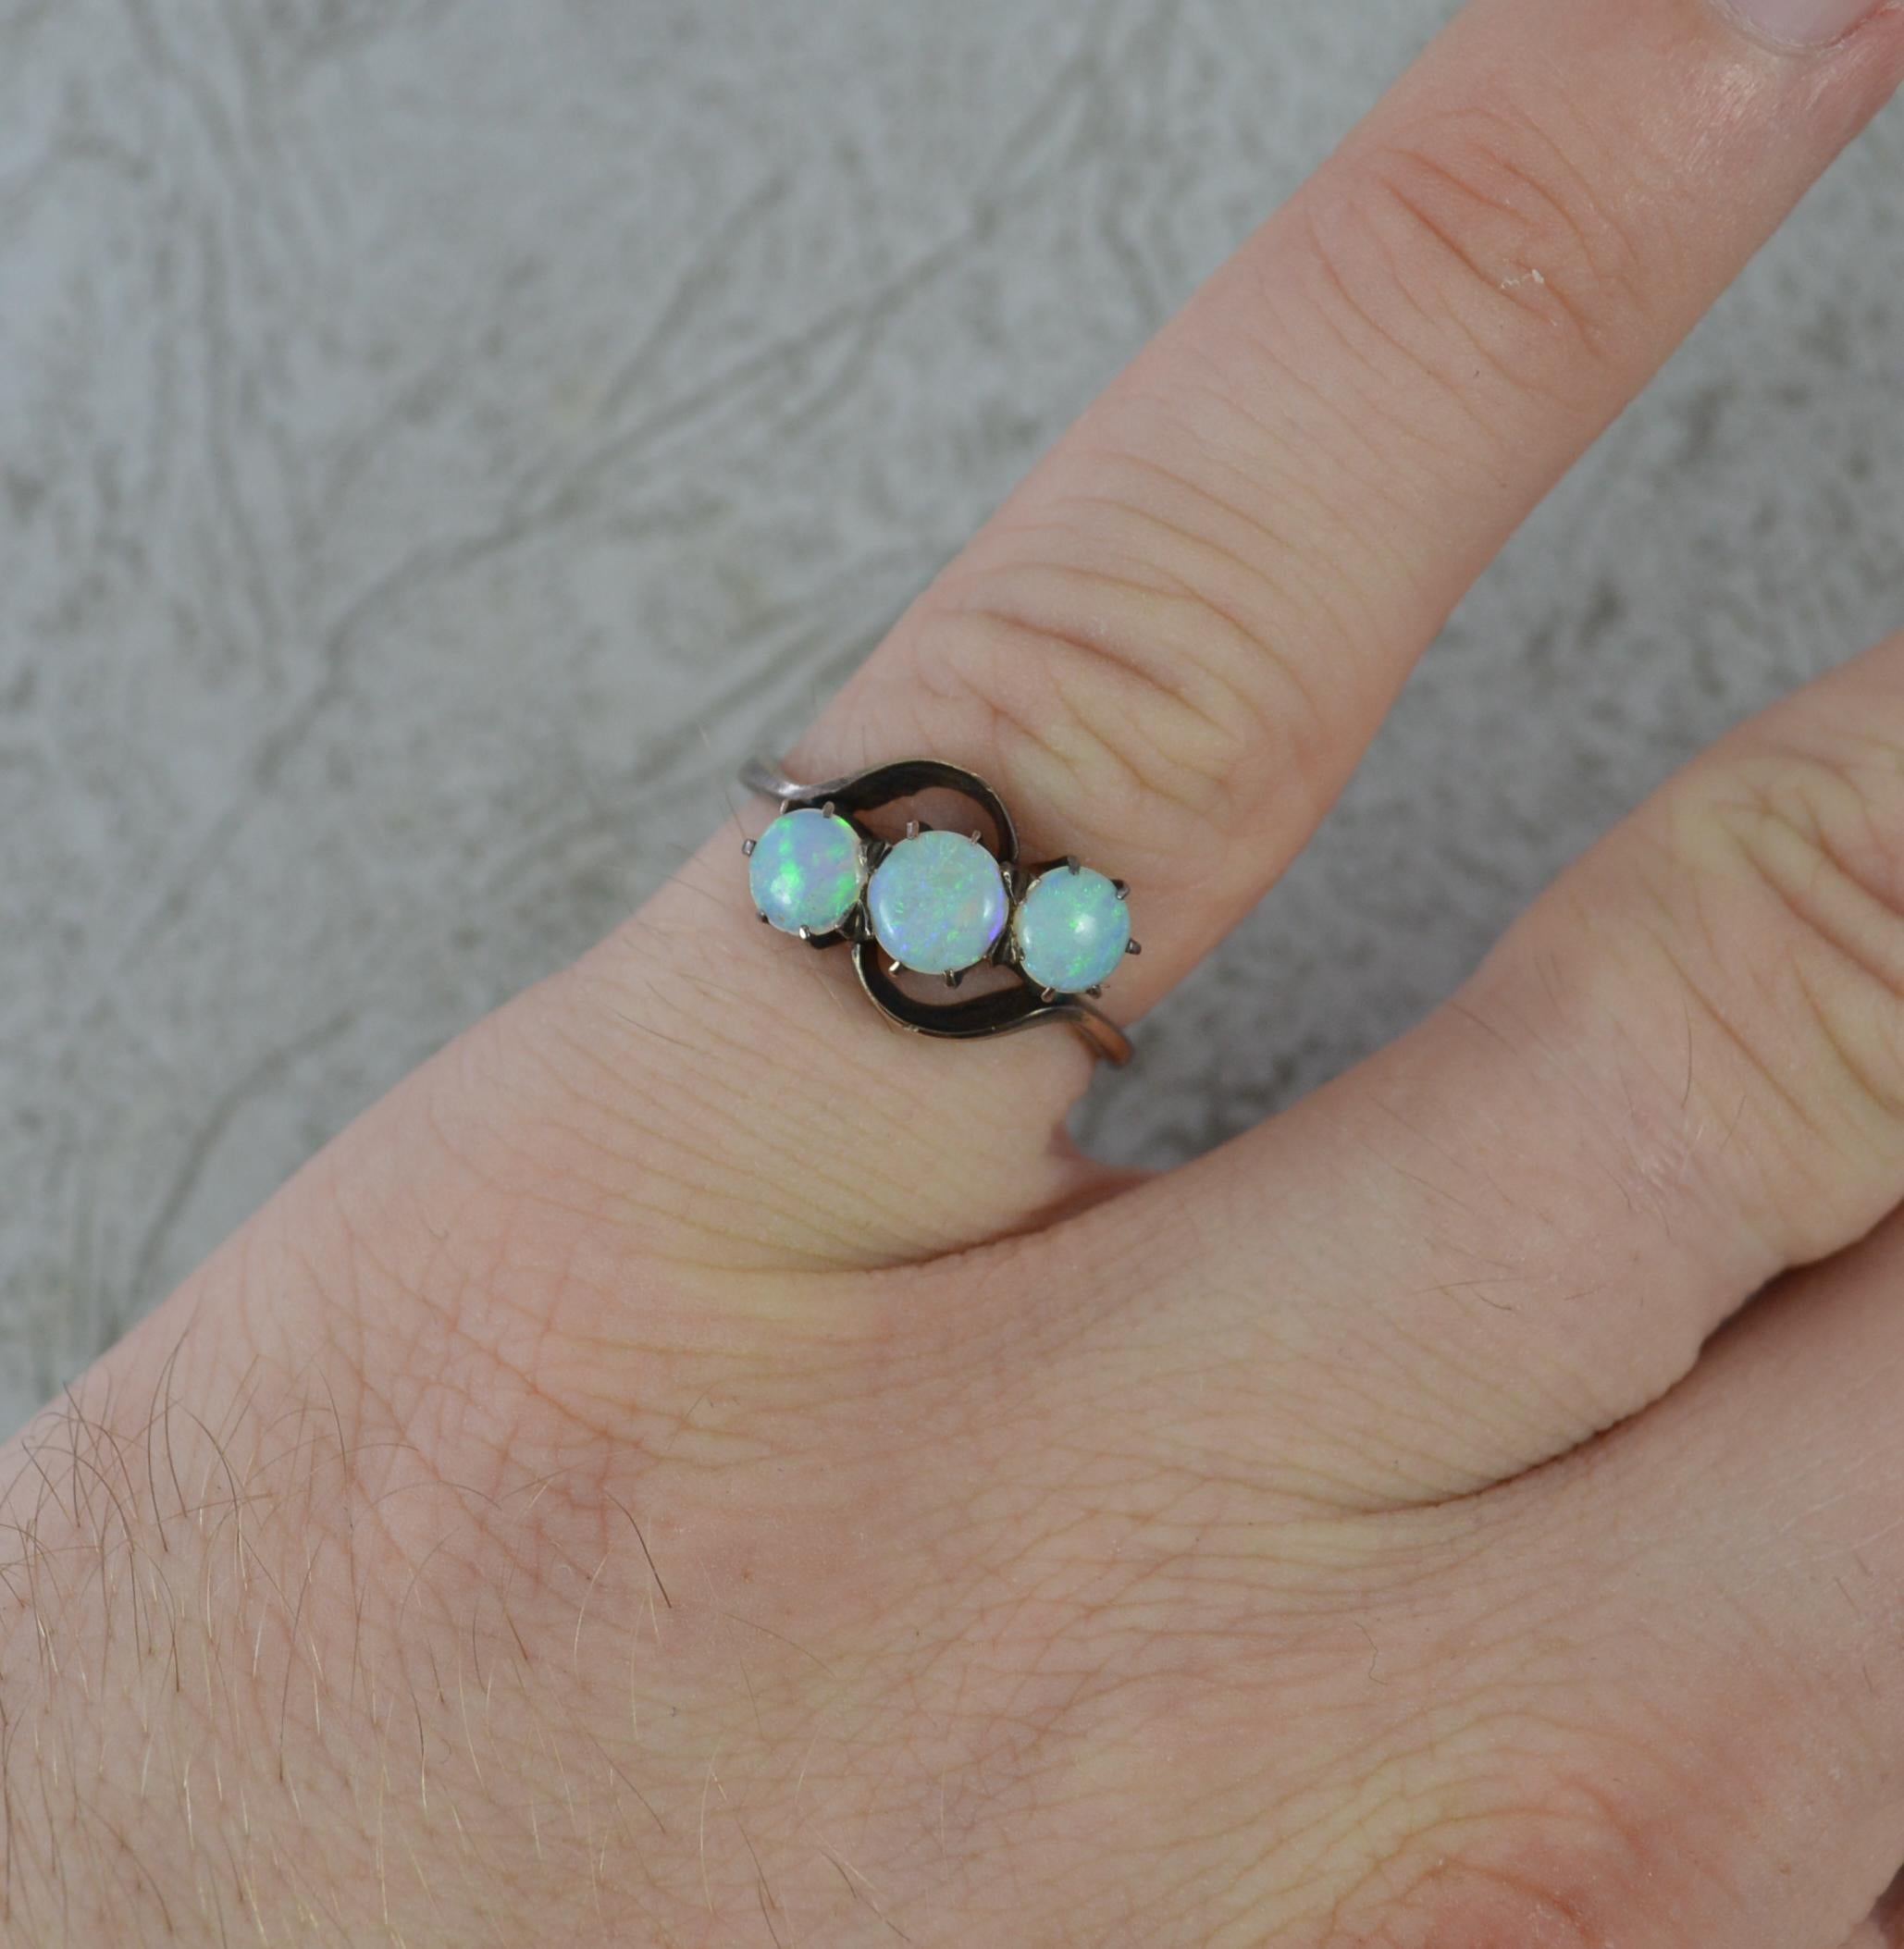 Ein hervorragender Ring mit natürlichem Opal.
Solide 14 Karat Gold Beispiel.
Entworfen mit drei rund geformten natürlichen Opalen in Krallenfassungen auf Twist.
13 mm Spreizung der Steine.
Ca. 1940/50.

ZUSTAND ; Sehr gut. Gut verankert. Scharfes